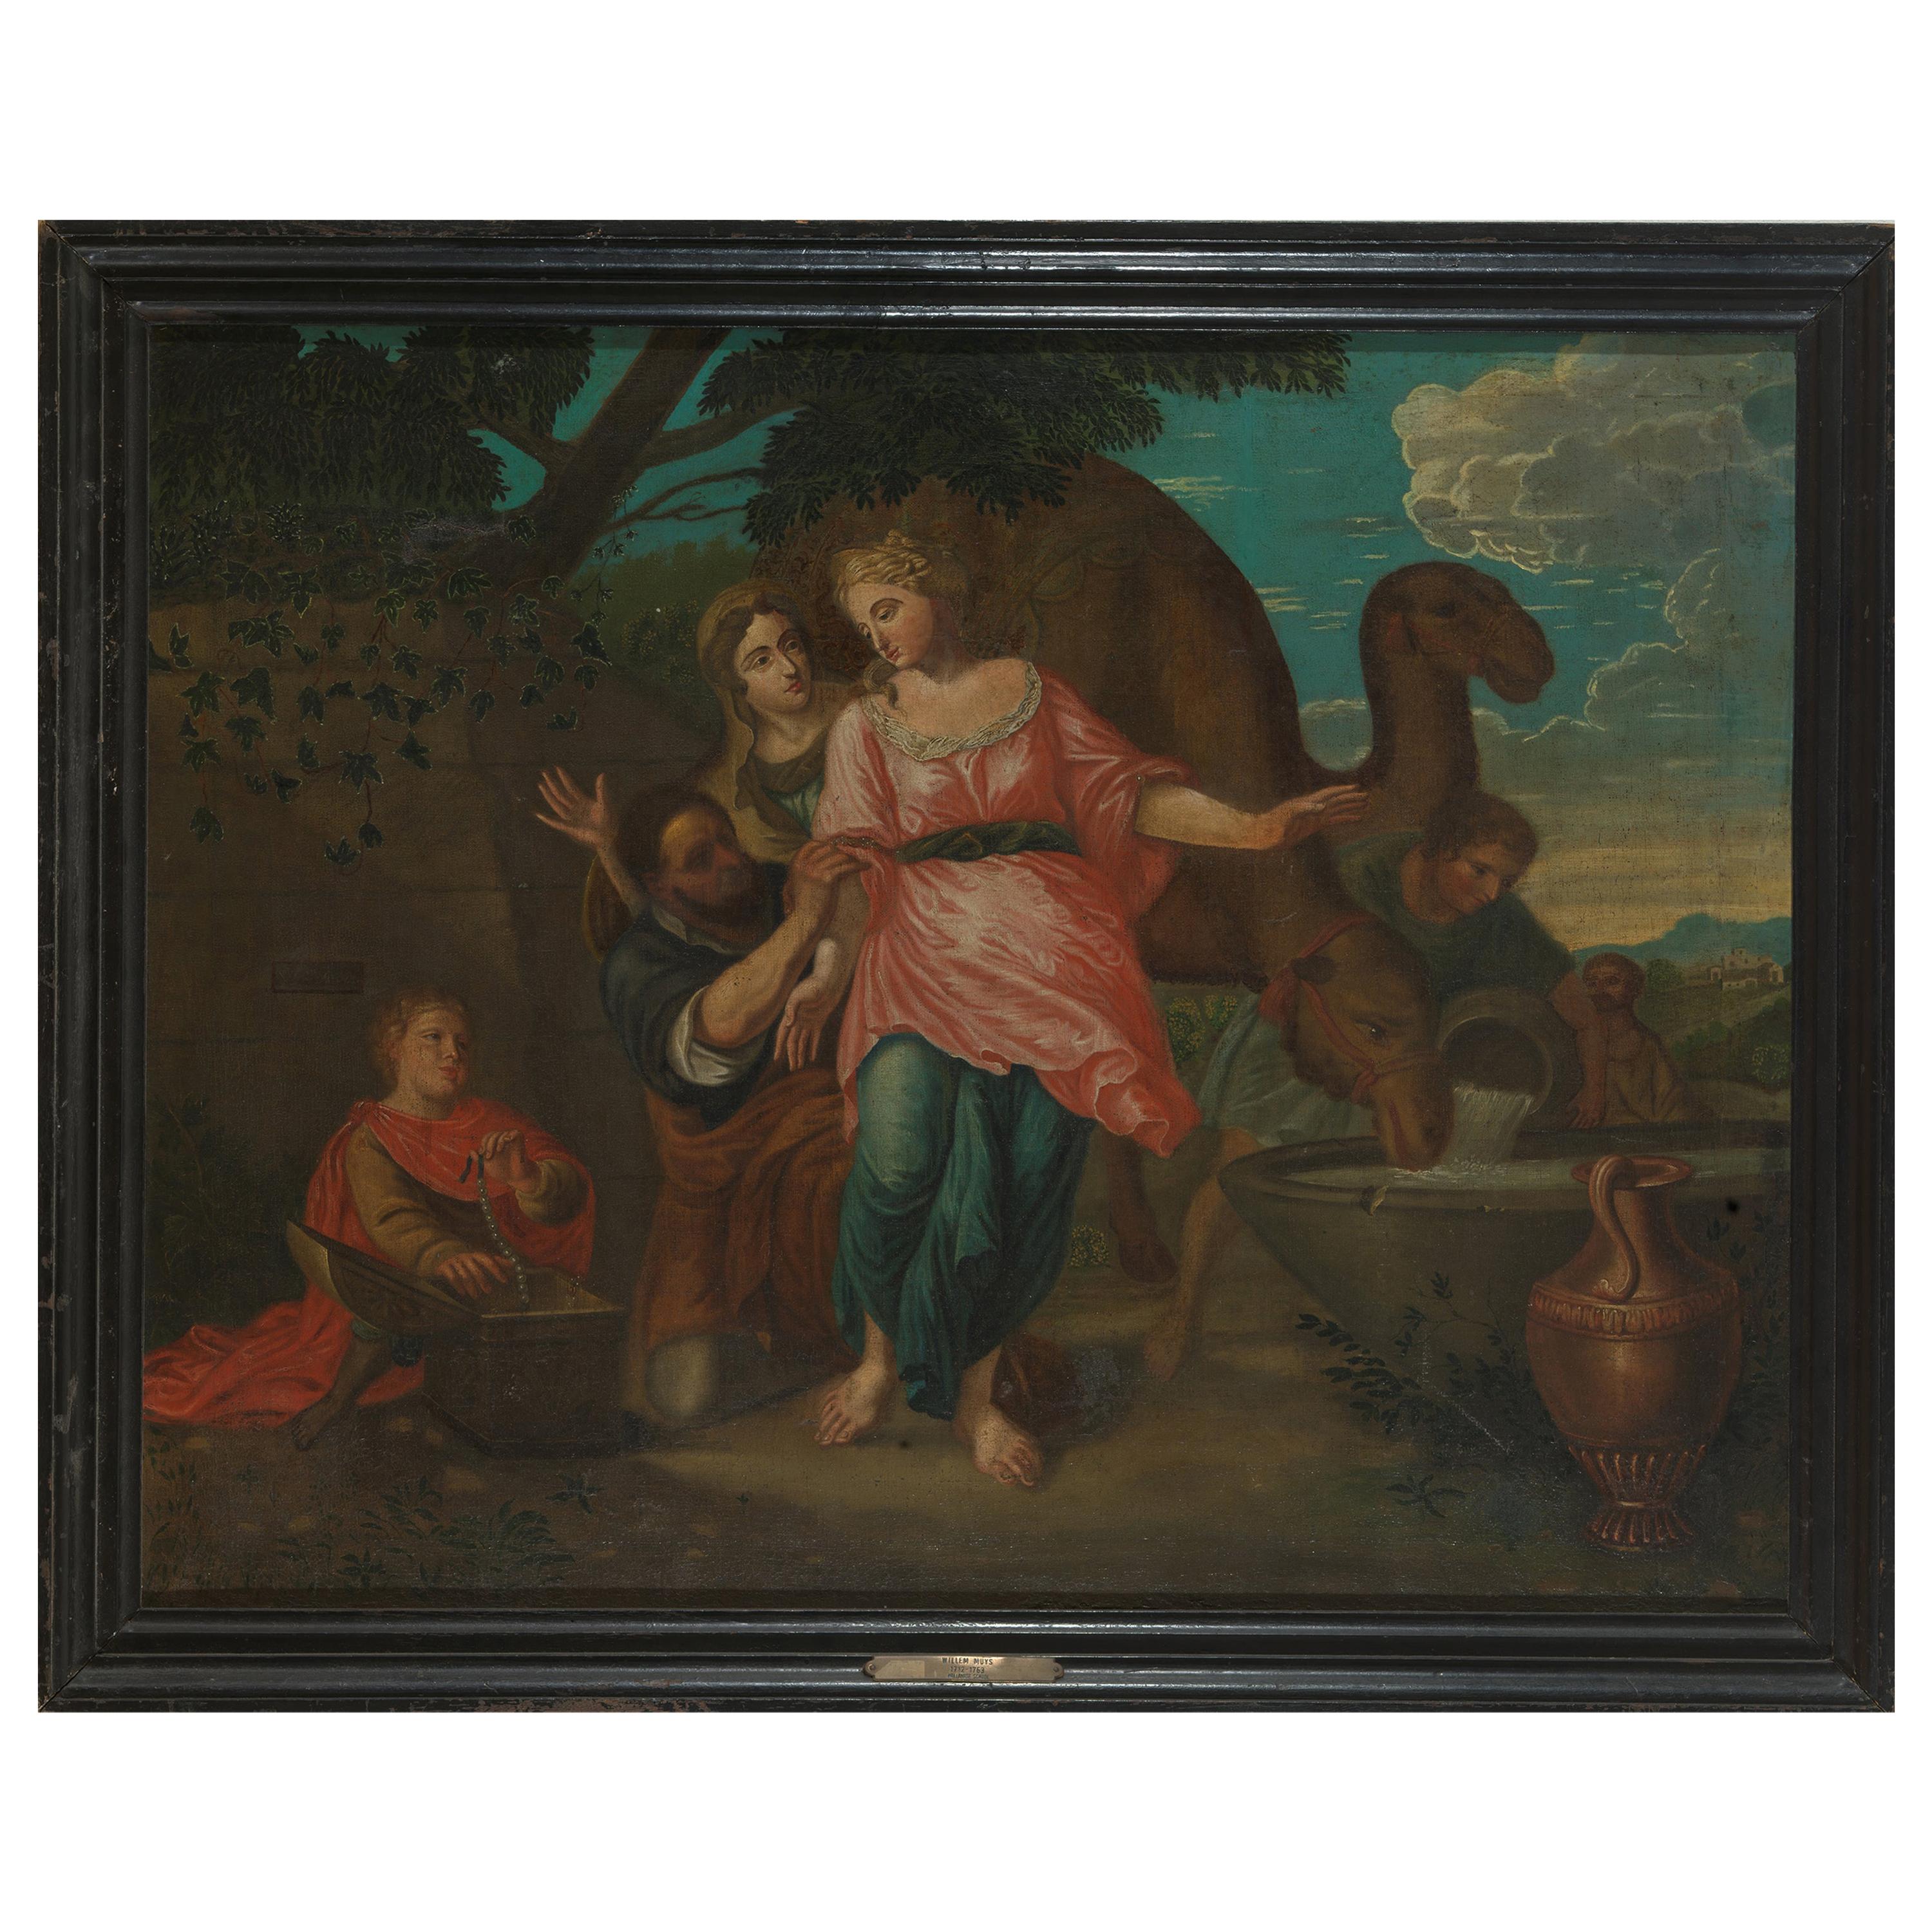 XVIIIe siècle, Willem Muys, Rebekka et Eliëzer à la source d'eau, Huile sur toile